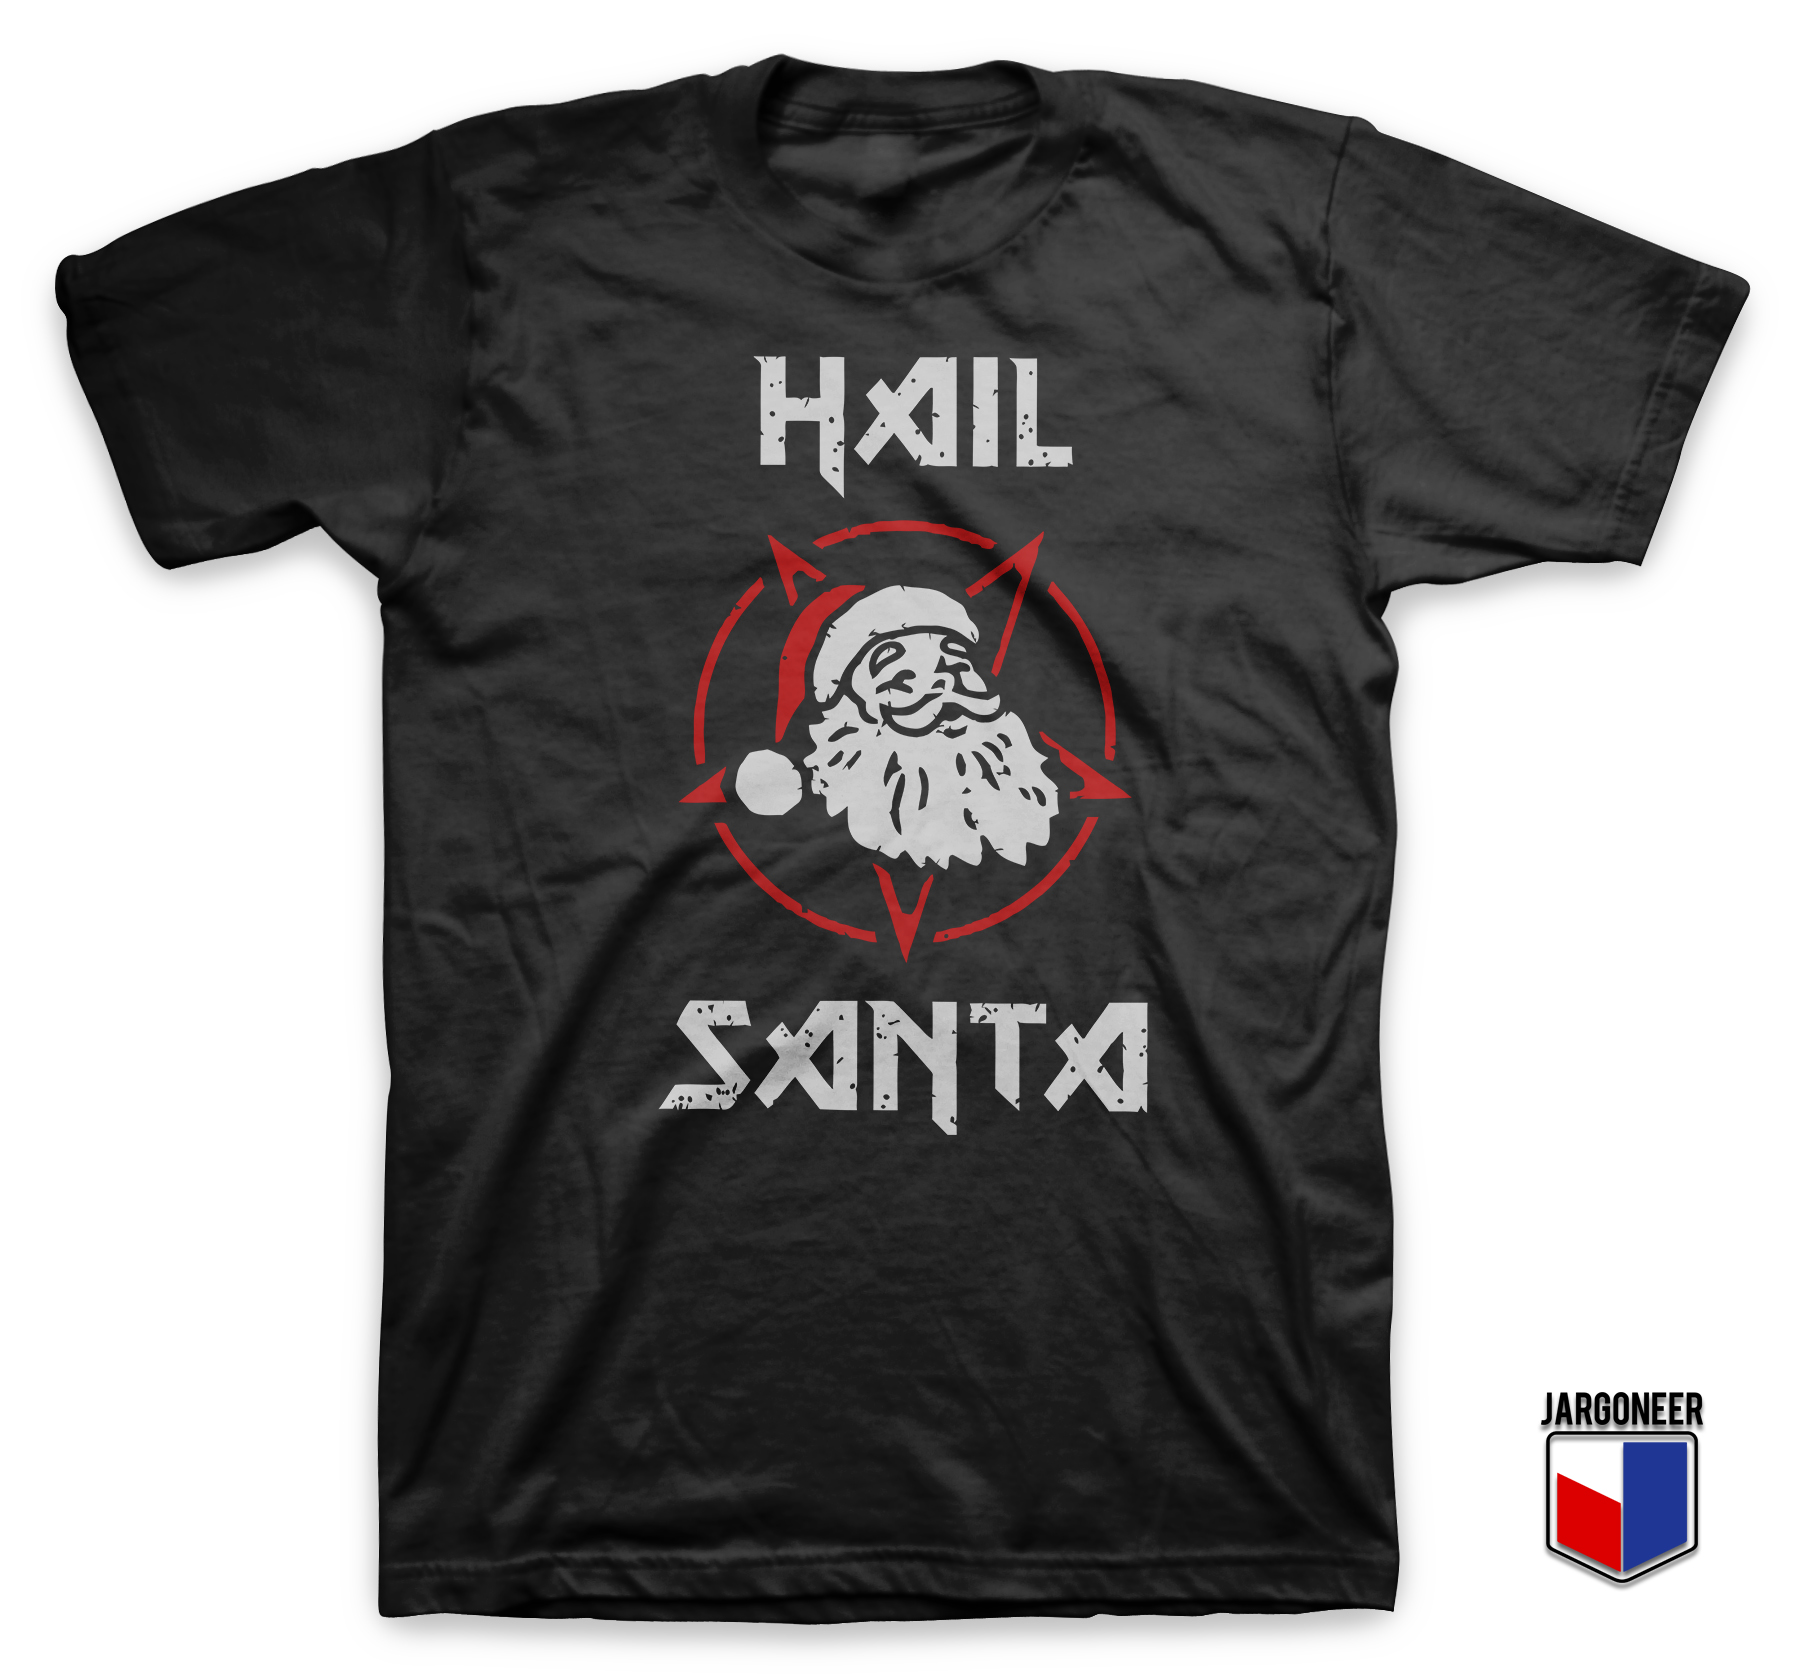 Hail Satan Claus Black T Shirt - Shop Unique Graphic Cool Shirt Designs